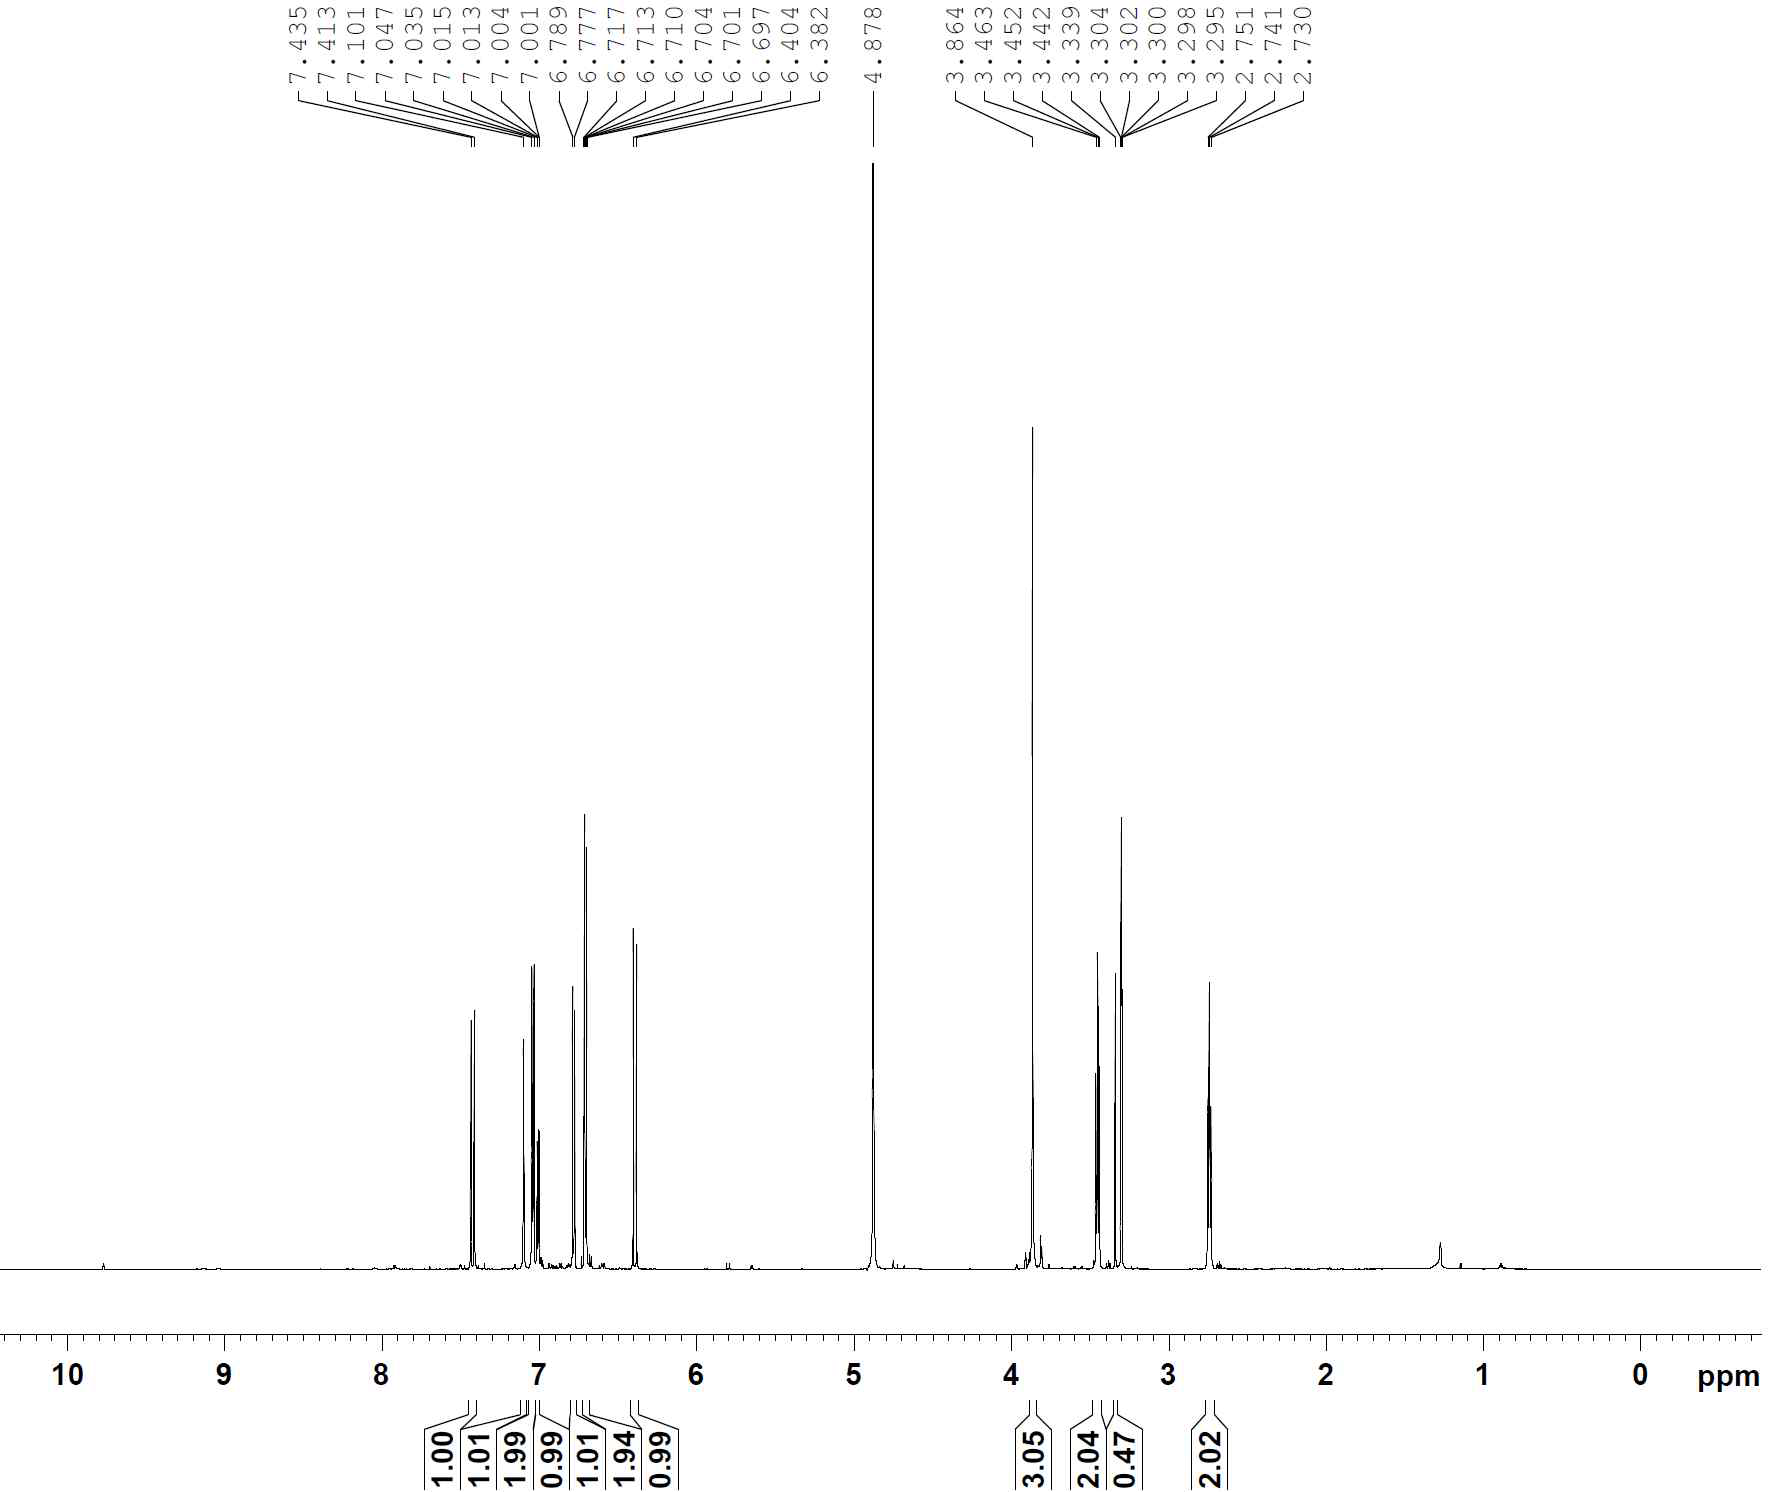 1H-NMR spectrum of compound 10